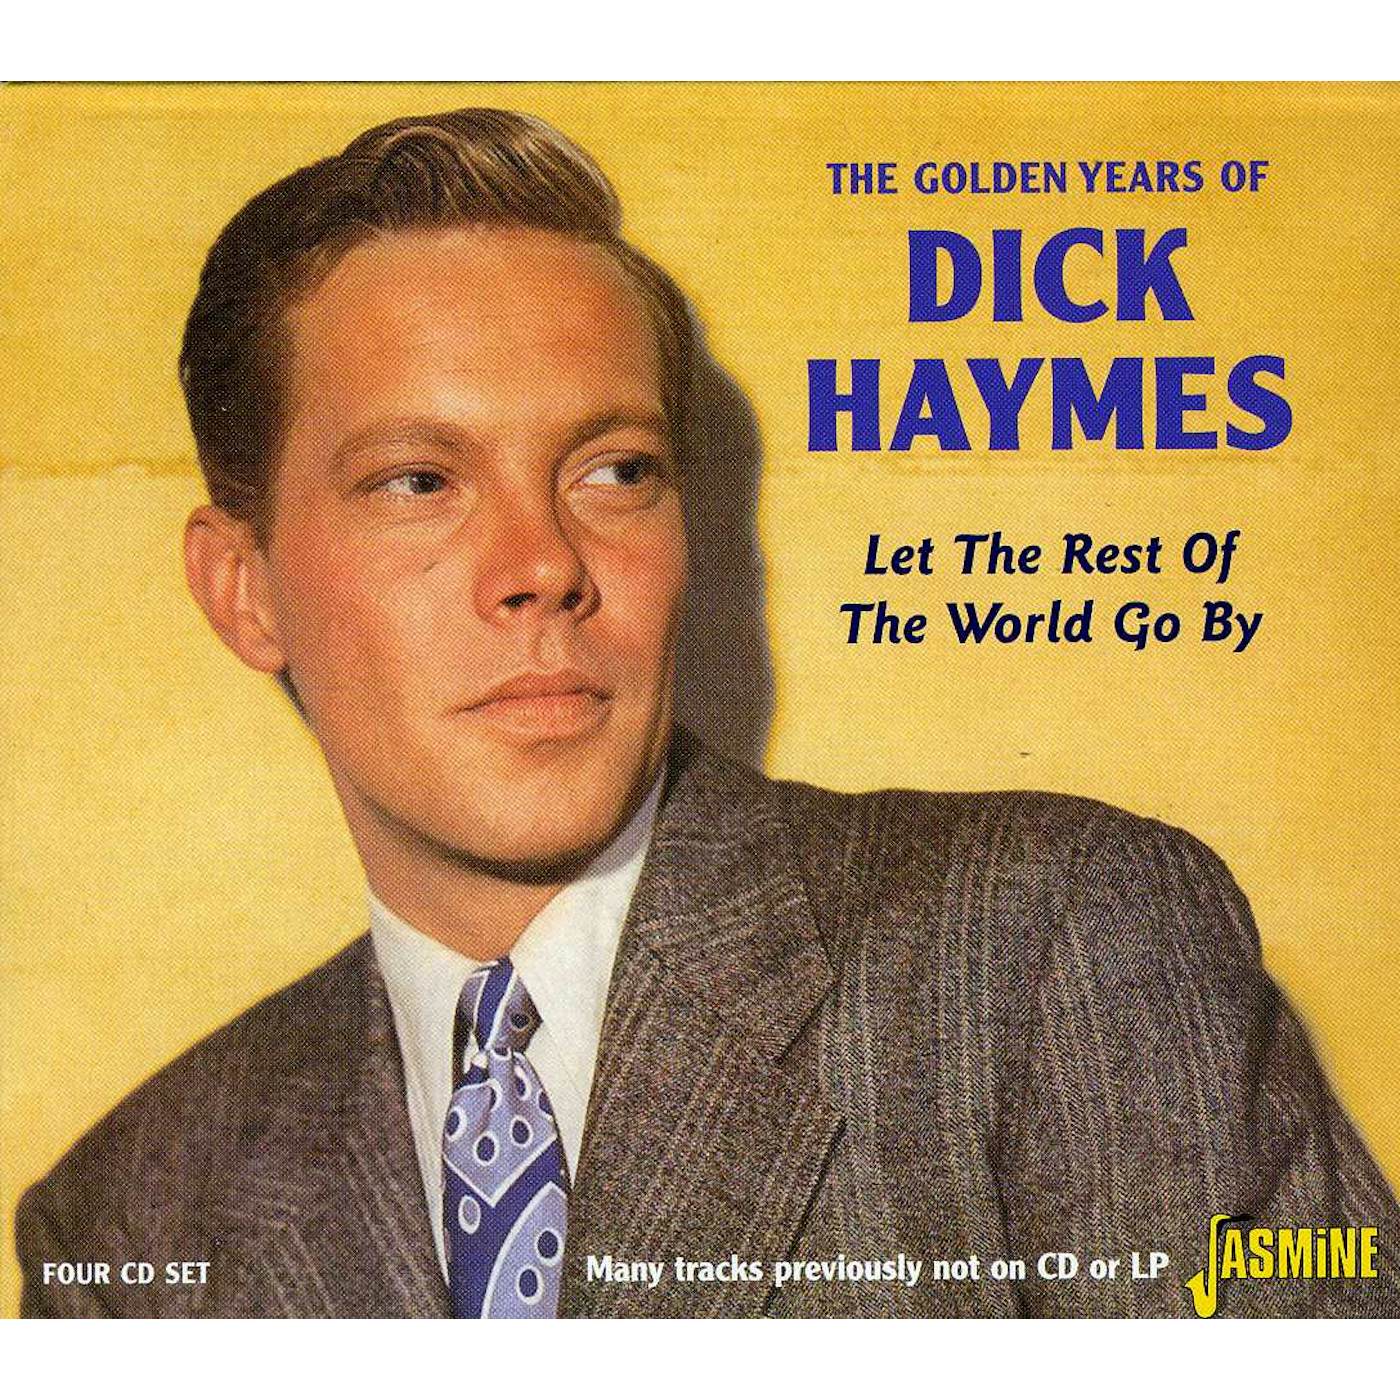 GOLDEN YEARS OF DICK HAYMES CD